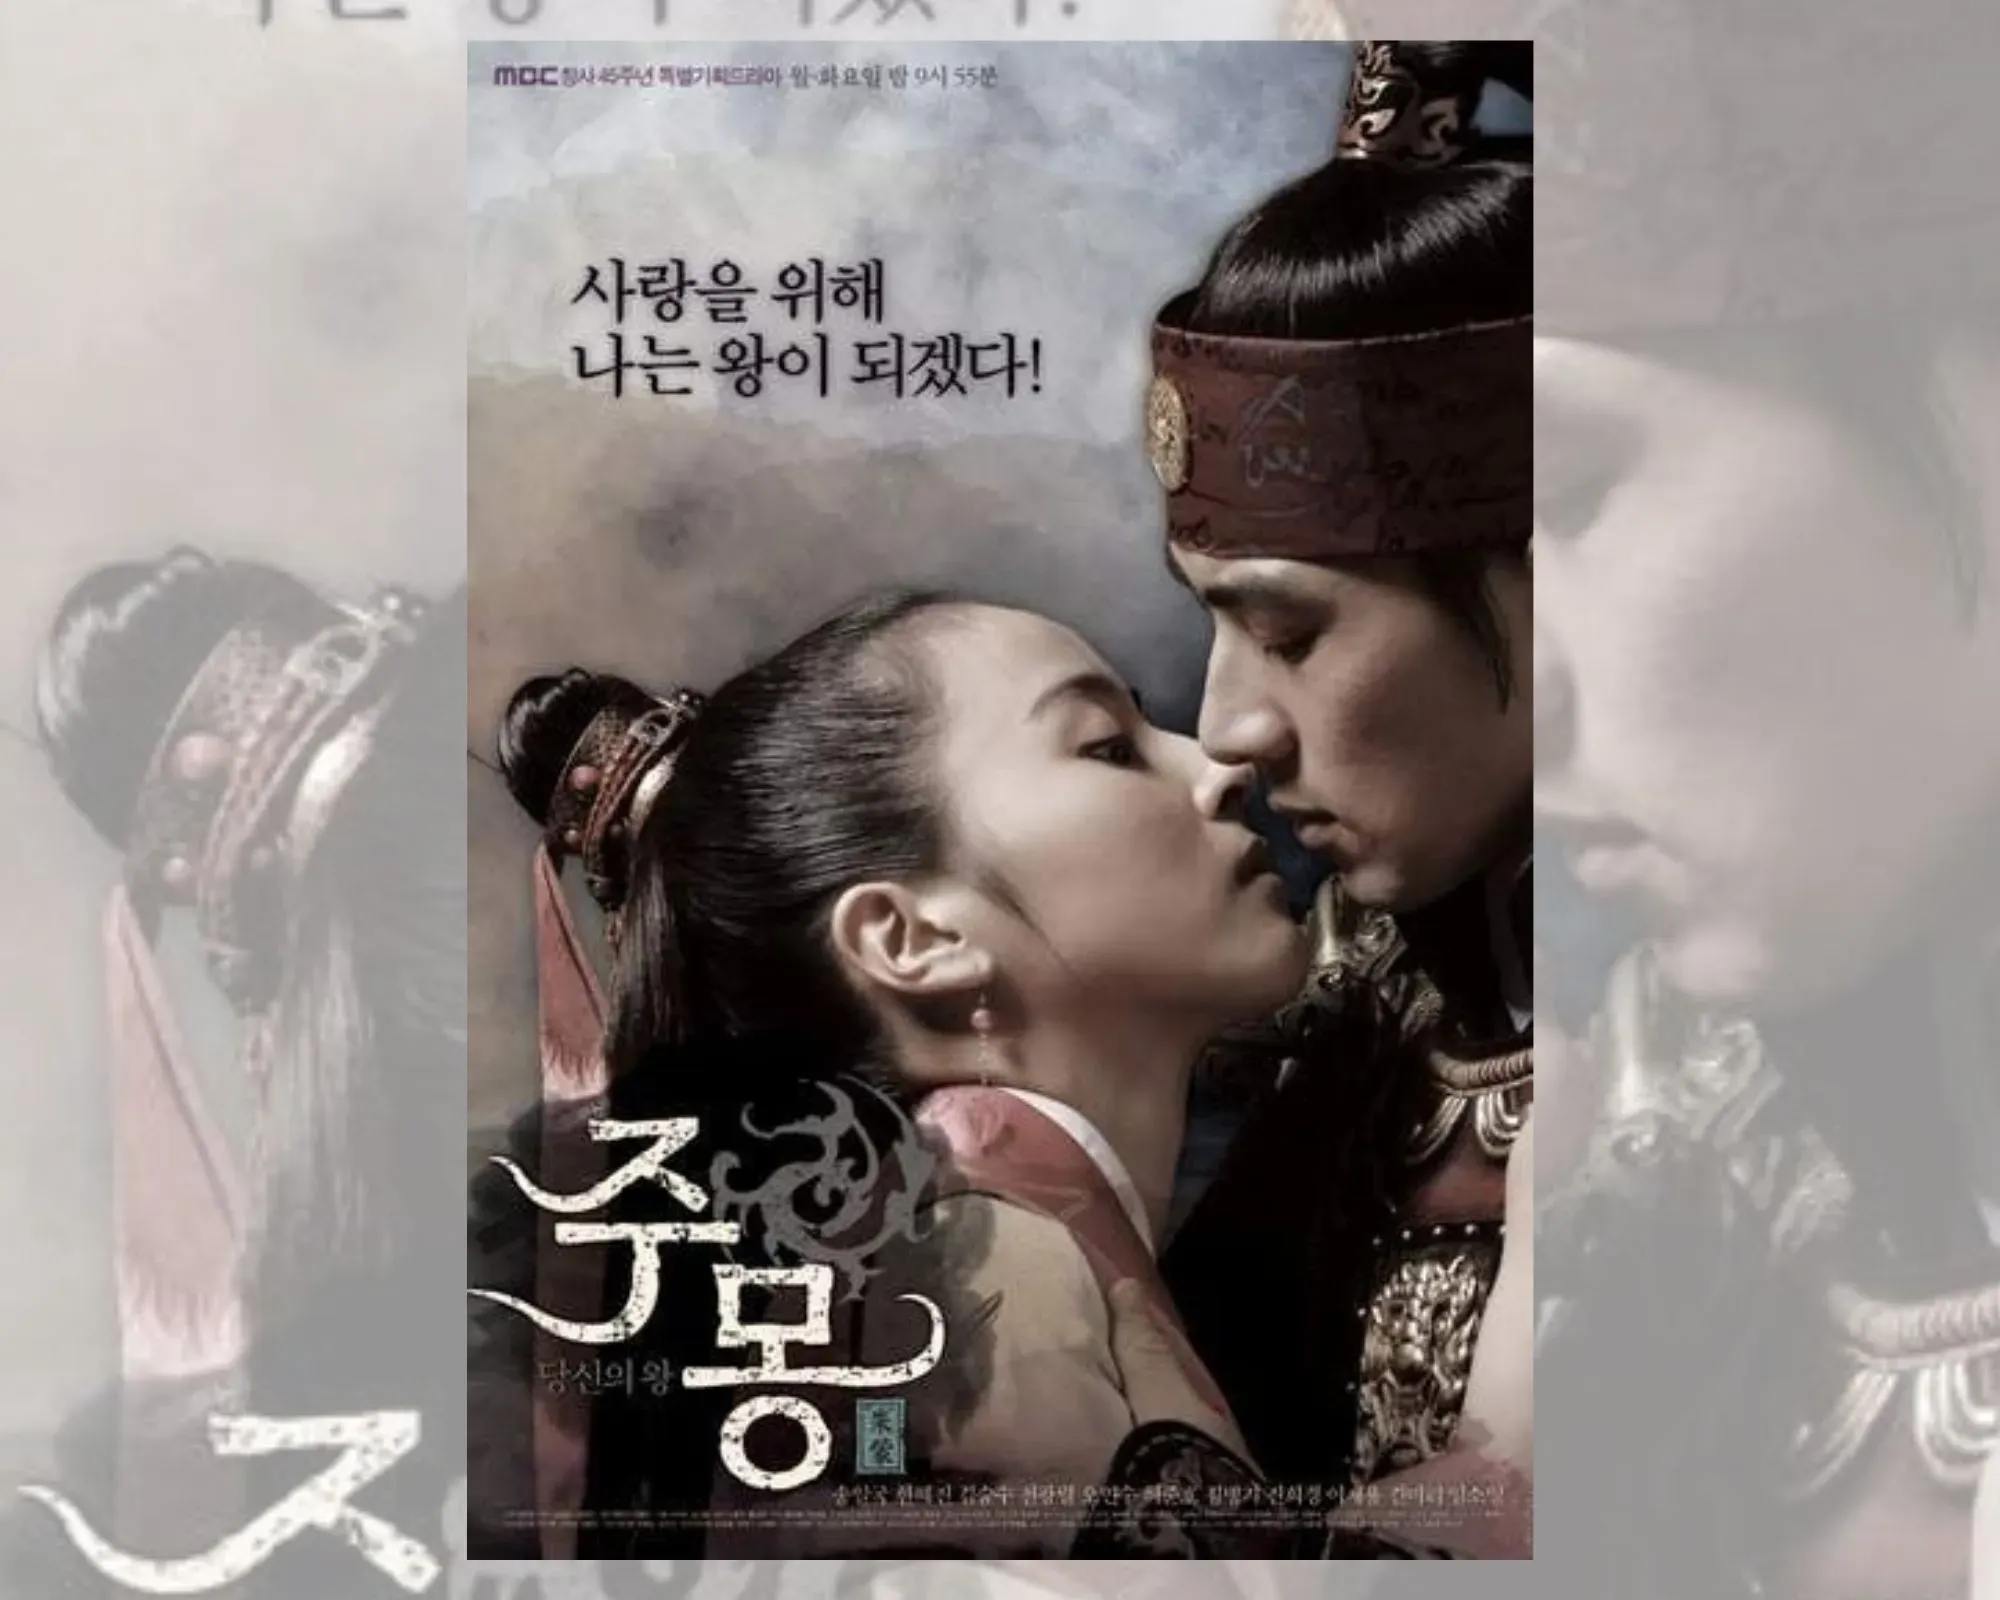 Постер на корейската драма “Чумонг”, на който се виждат Чумонг и Сосоно. 